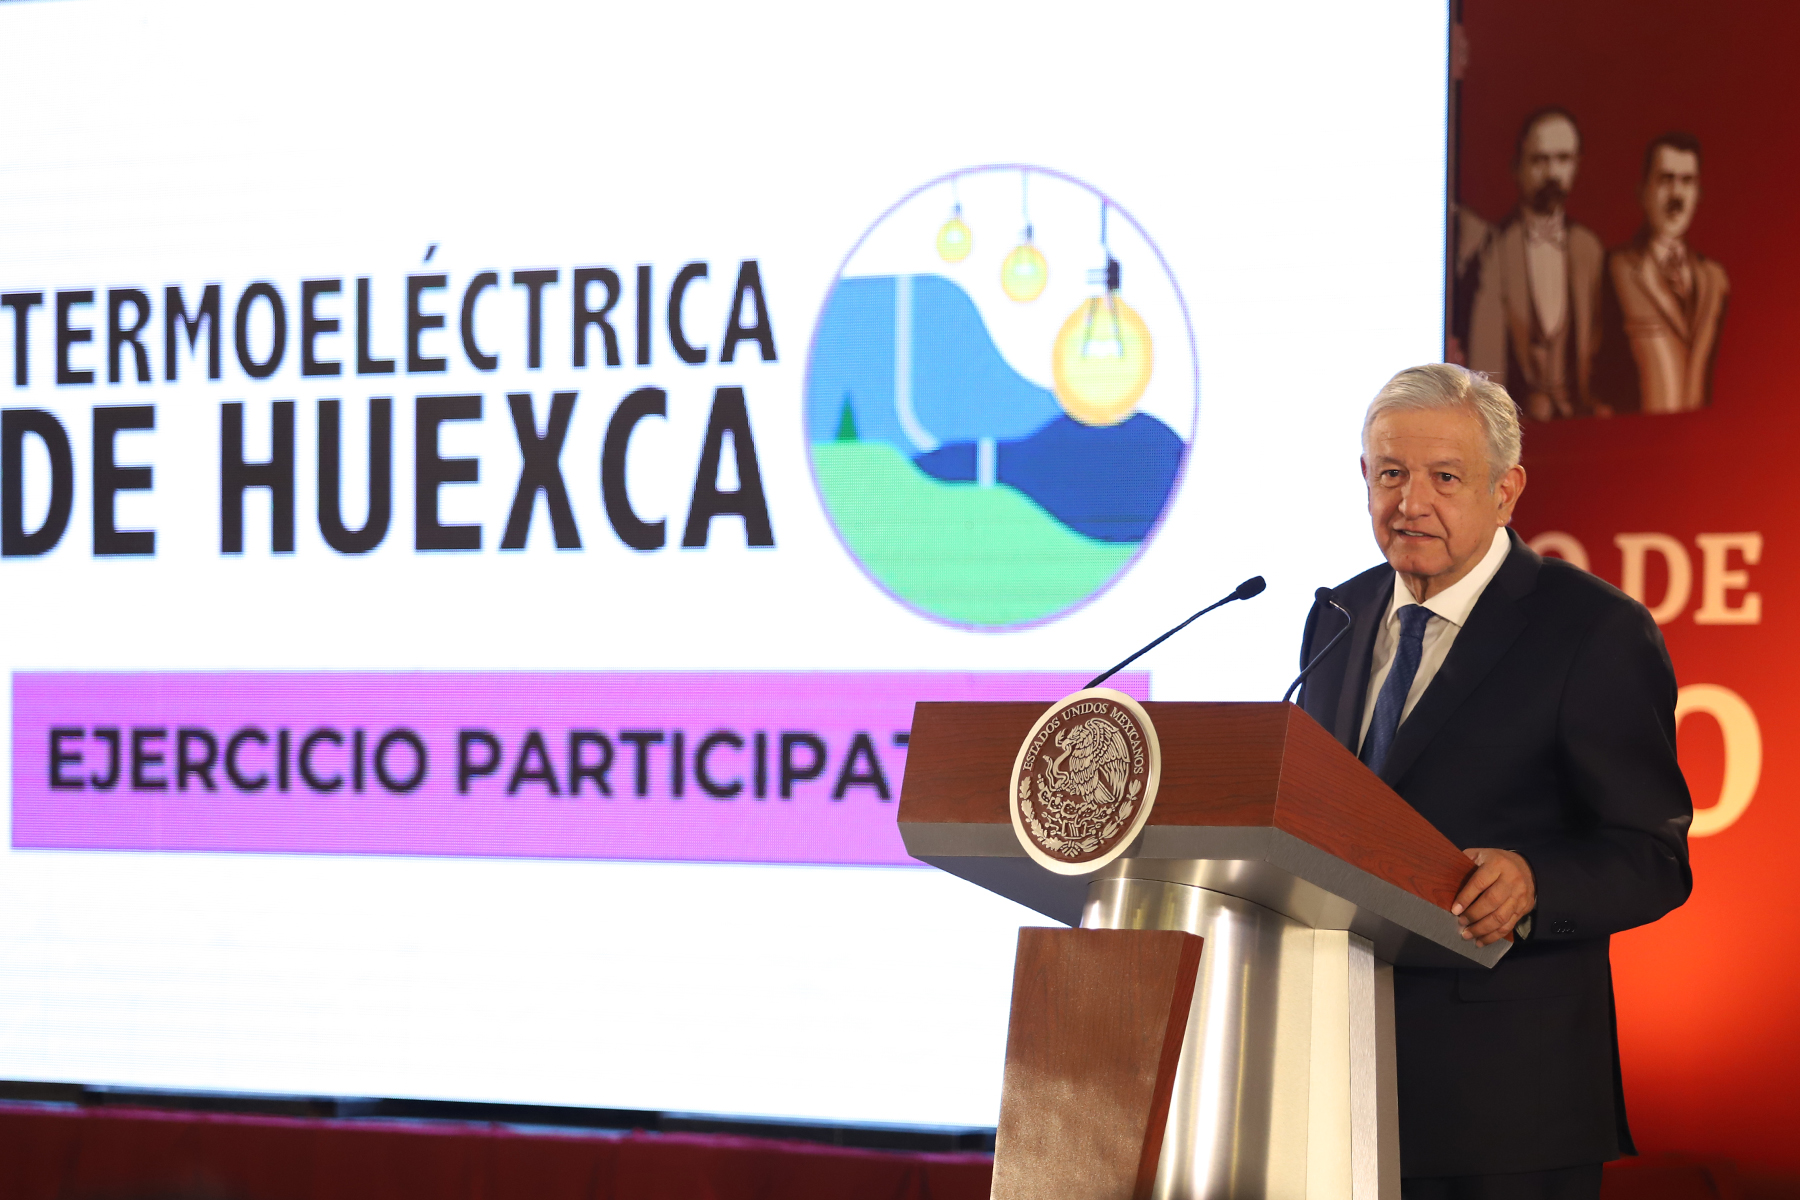 El Presidente Andrés Manuel López Obrador informó que se suscribió un acuerdo con la ONU para que se pueda garantizar a los pobladores de Morelos que, en el caso de ser aprobada la termoeléctrica de Huexca, se contará con dictámenes de un organismo internacional sobre la calidad del agua del río Cuautla.